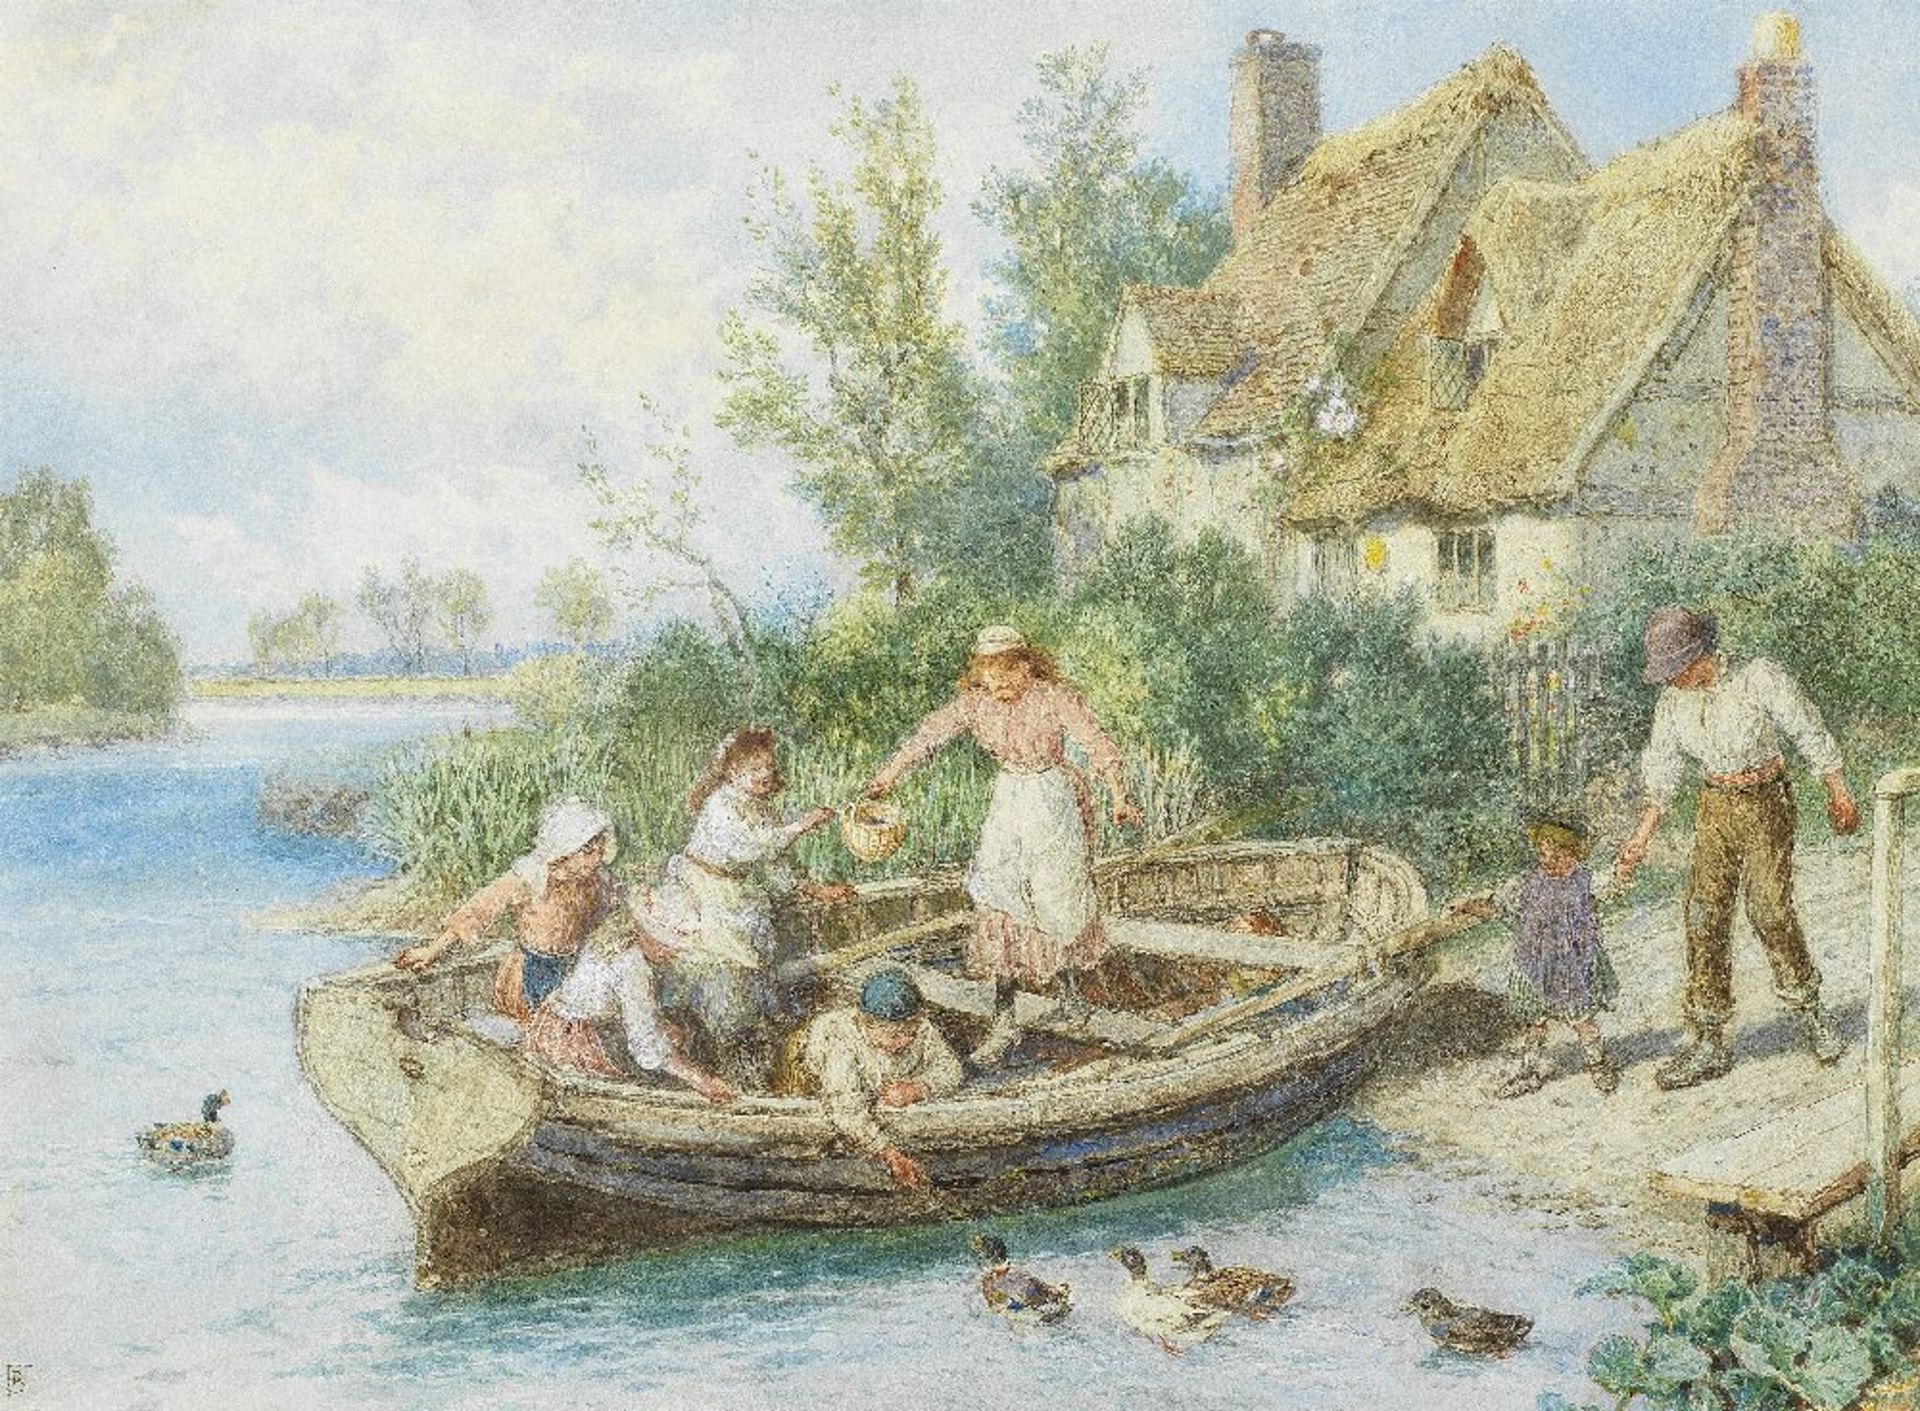 Myles Birket Foster, RWS (British, 1825-1899) The ferry